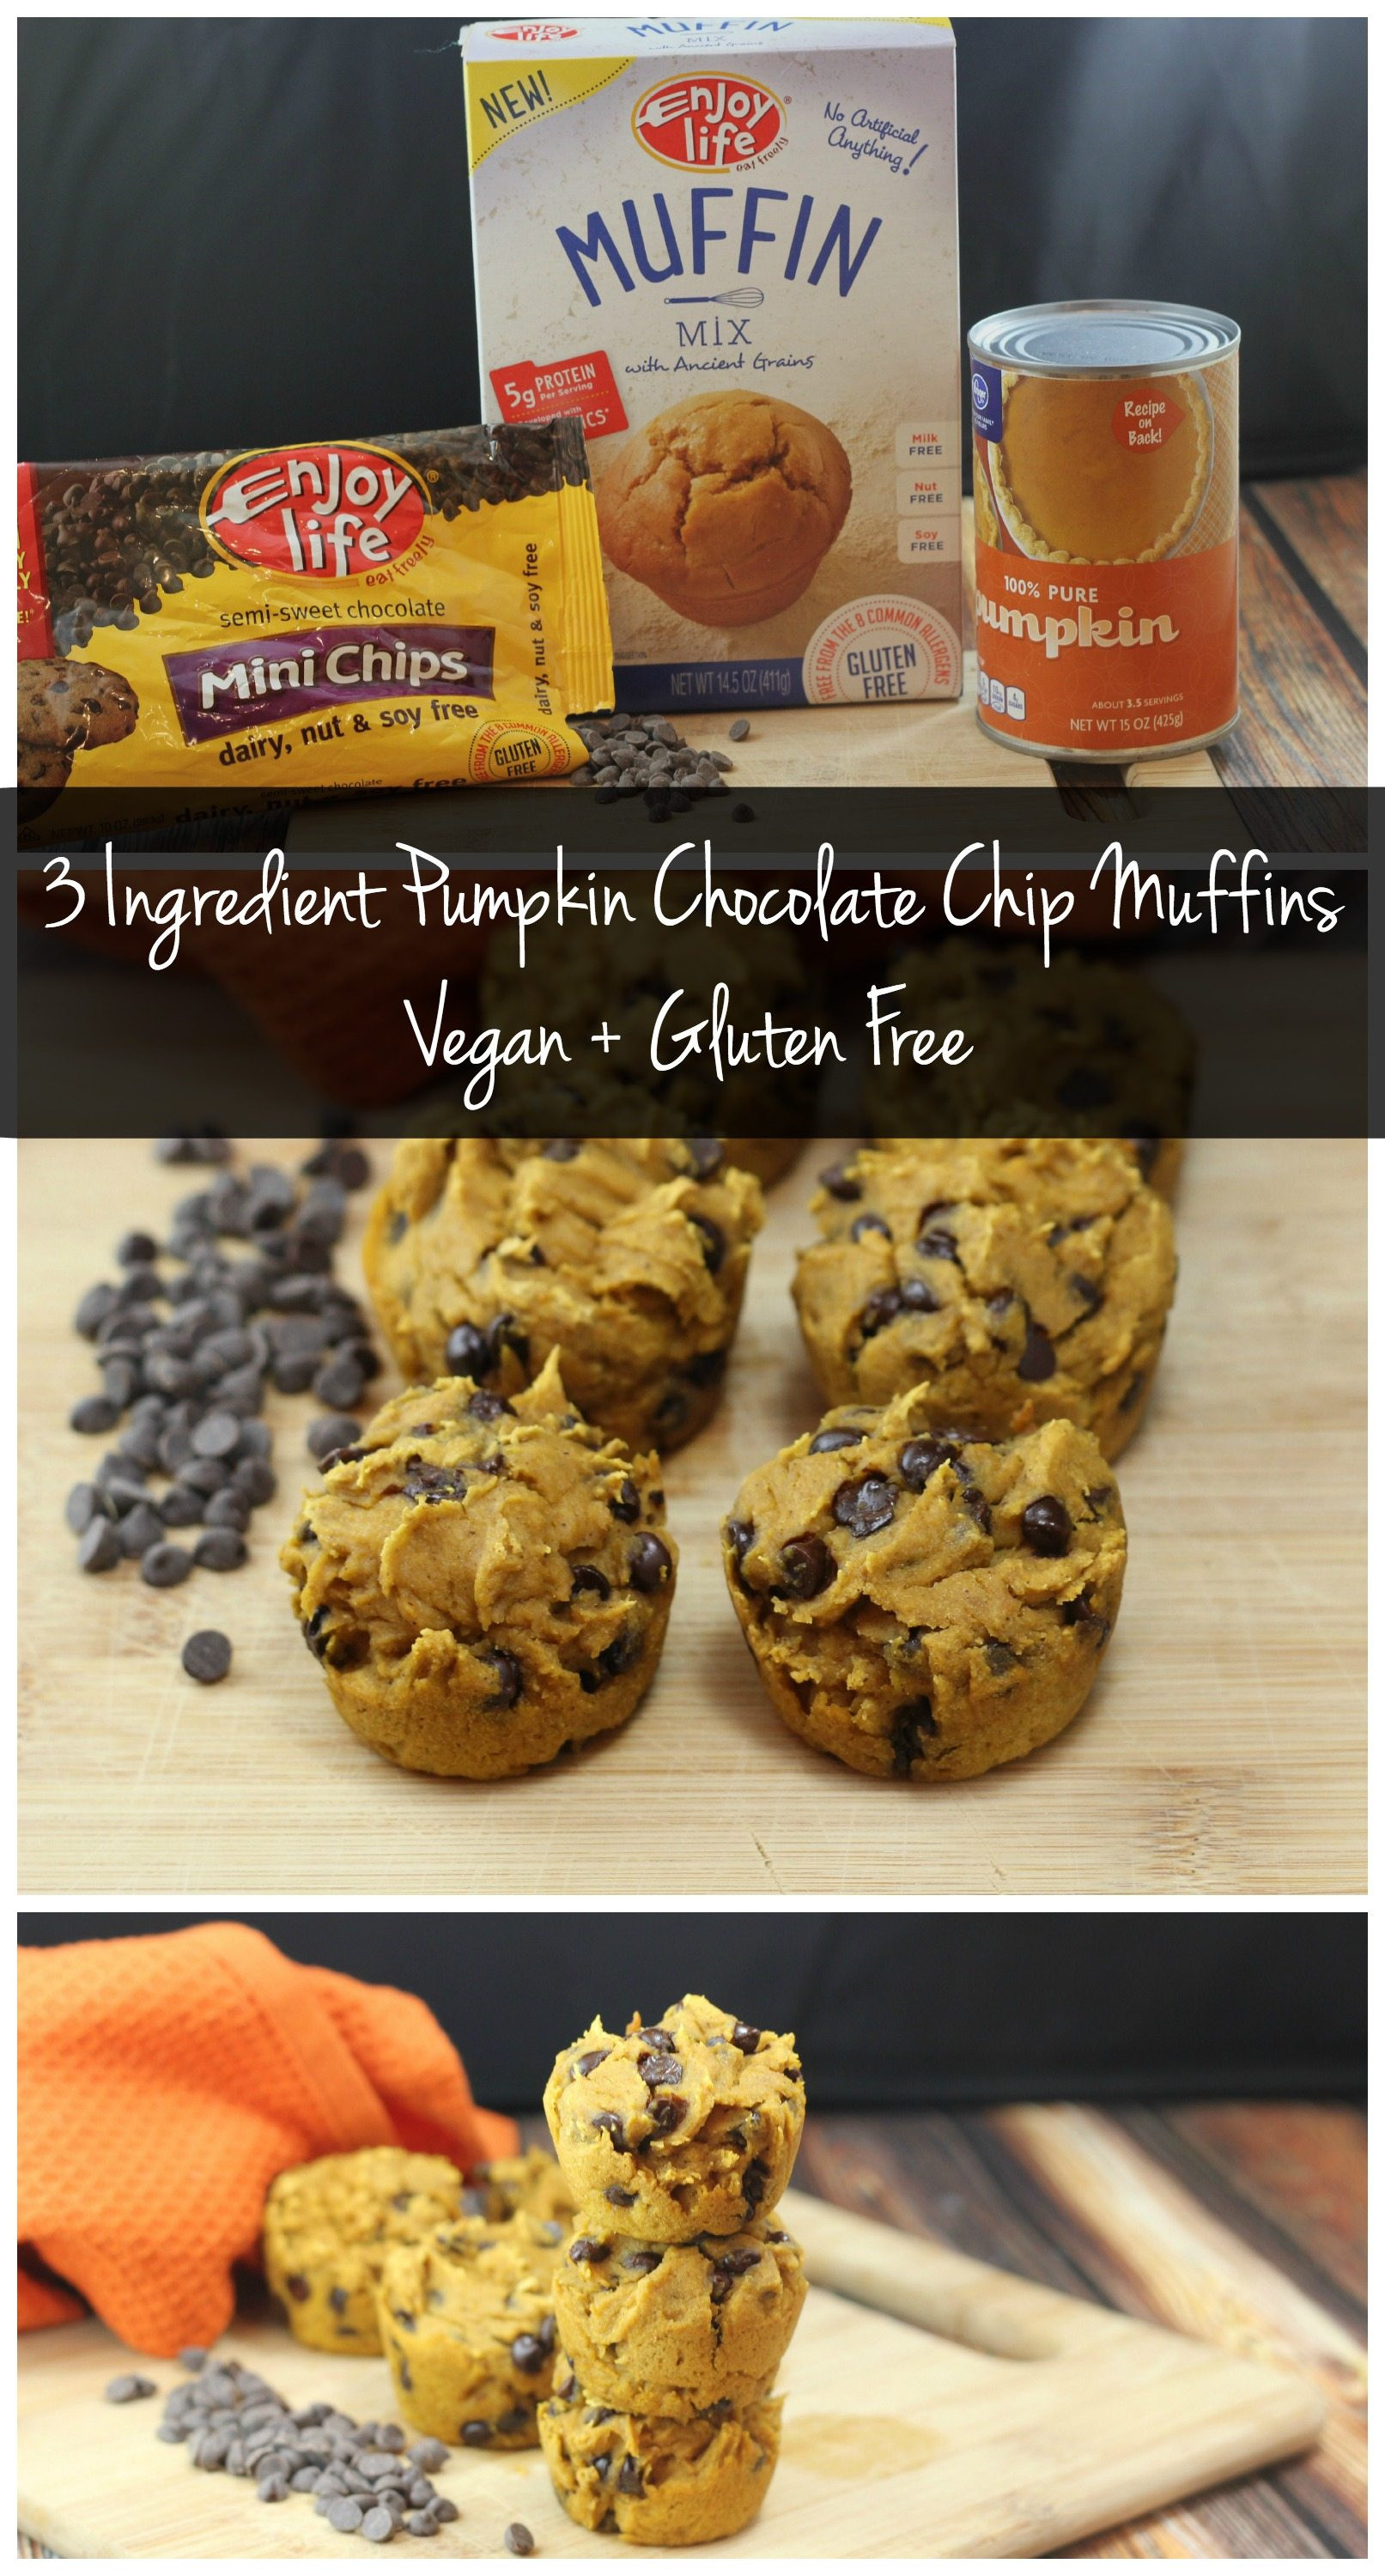 Gluten Free Chocolate Chip Muffins
 3 Ingre nt Chocolate Chip Pumpkin Muffins [Vegan